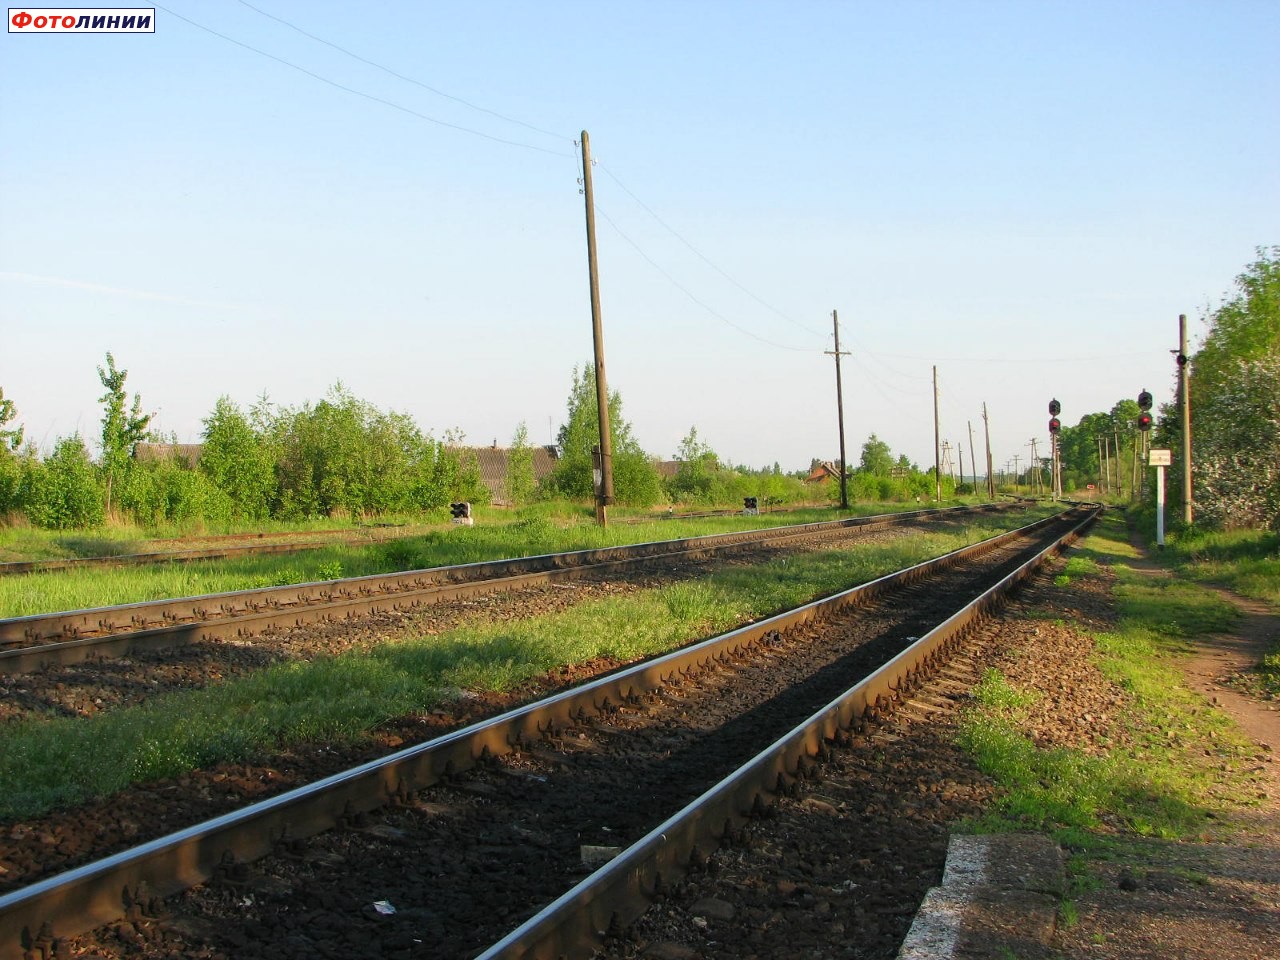 Вид на чётную горловину станции (в сторону Витебска) с конца платформы